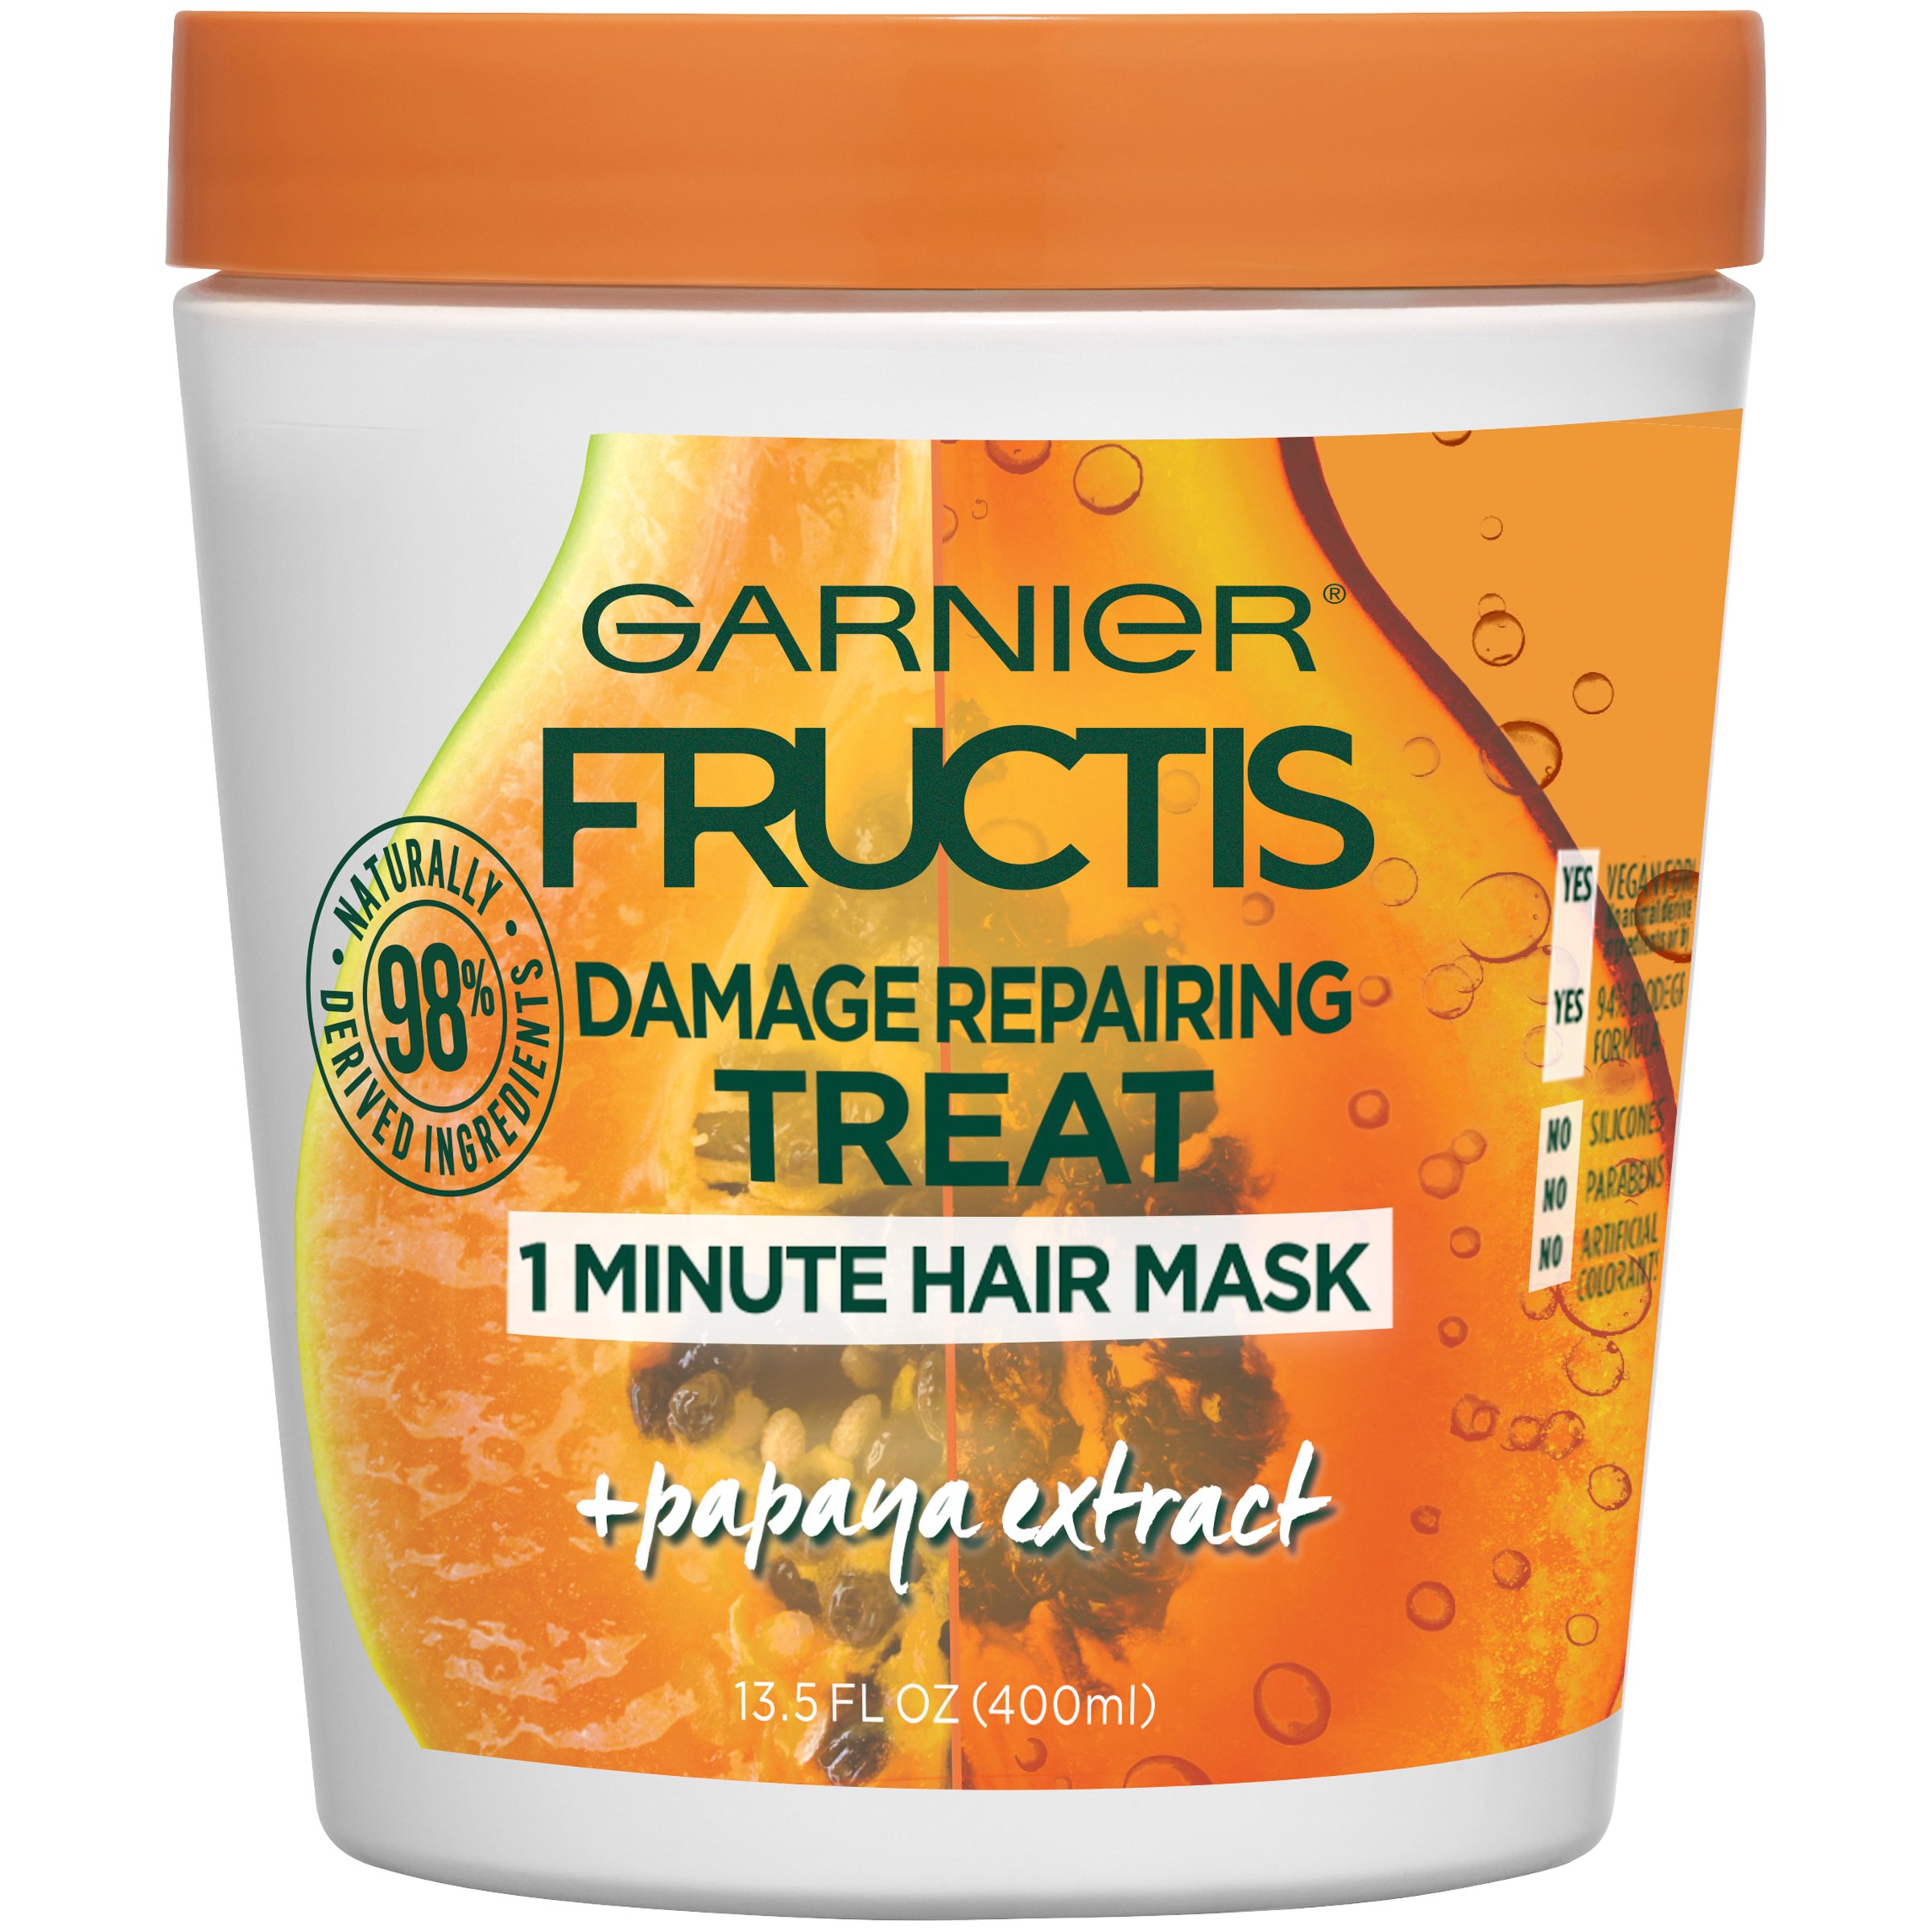 Garnier Fructis Damage Repairing Treat 1 Minute Hair Mask with Papaya  Extract - Shop Hair Care at H-E-B